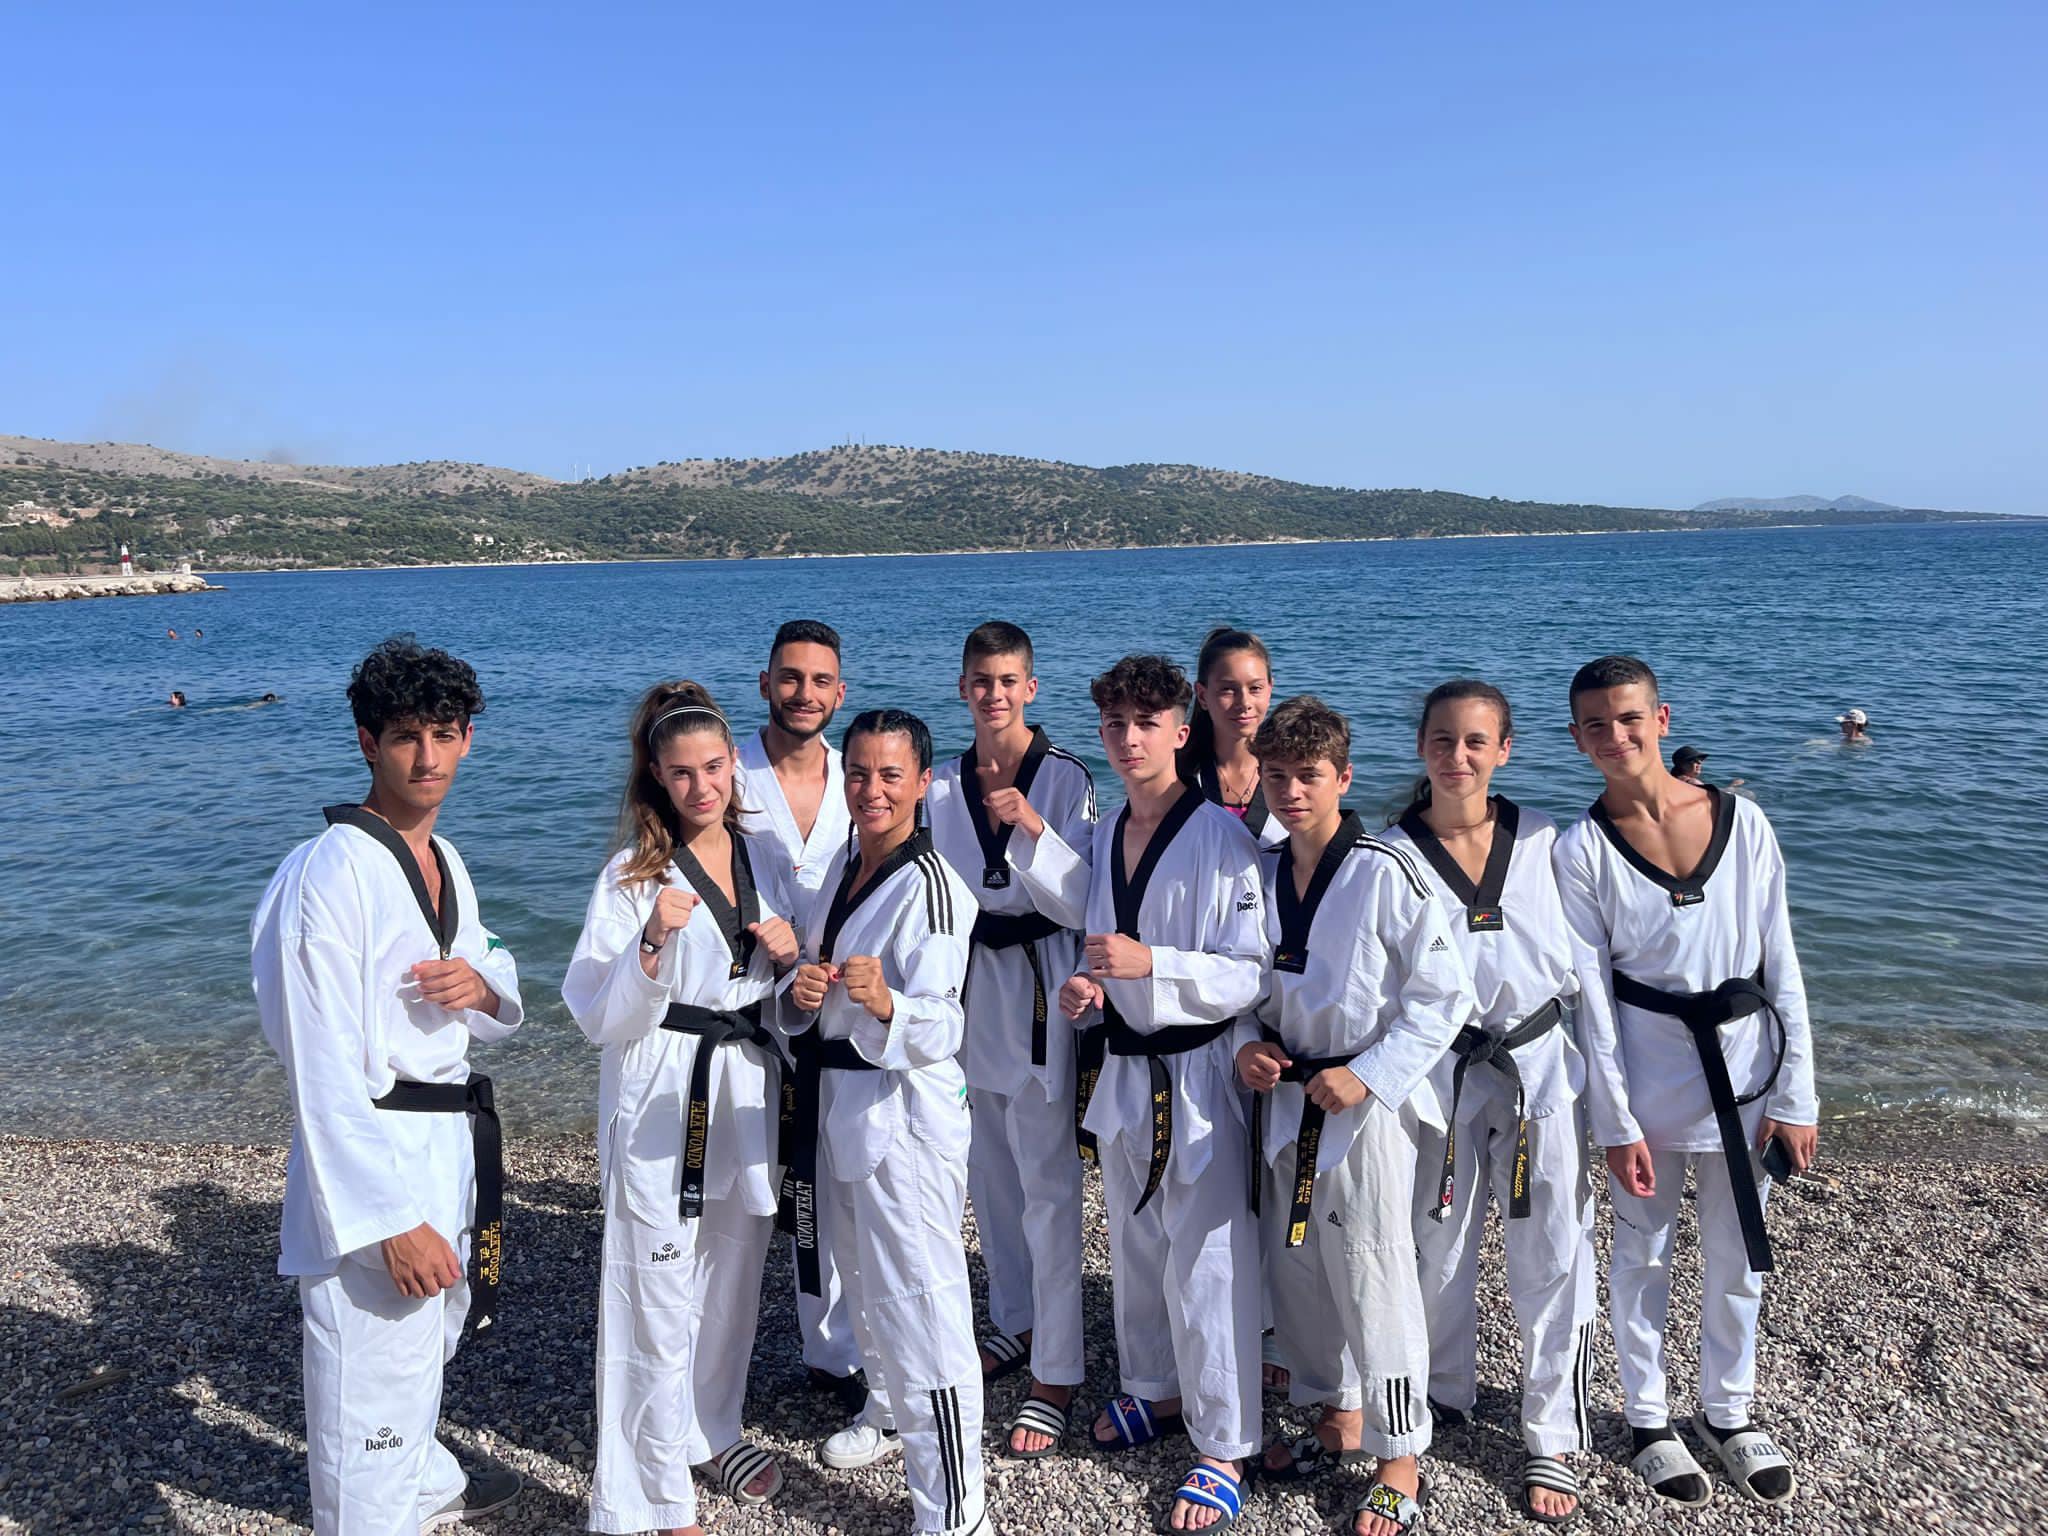 Continua la preparazione agonistica per i ragazzi del Club Taekwondo San Marino